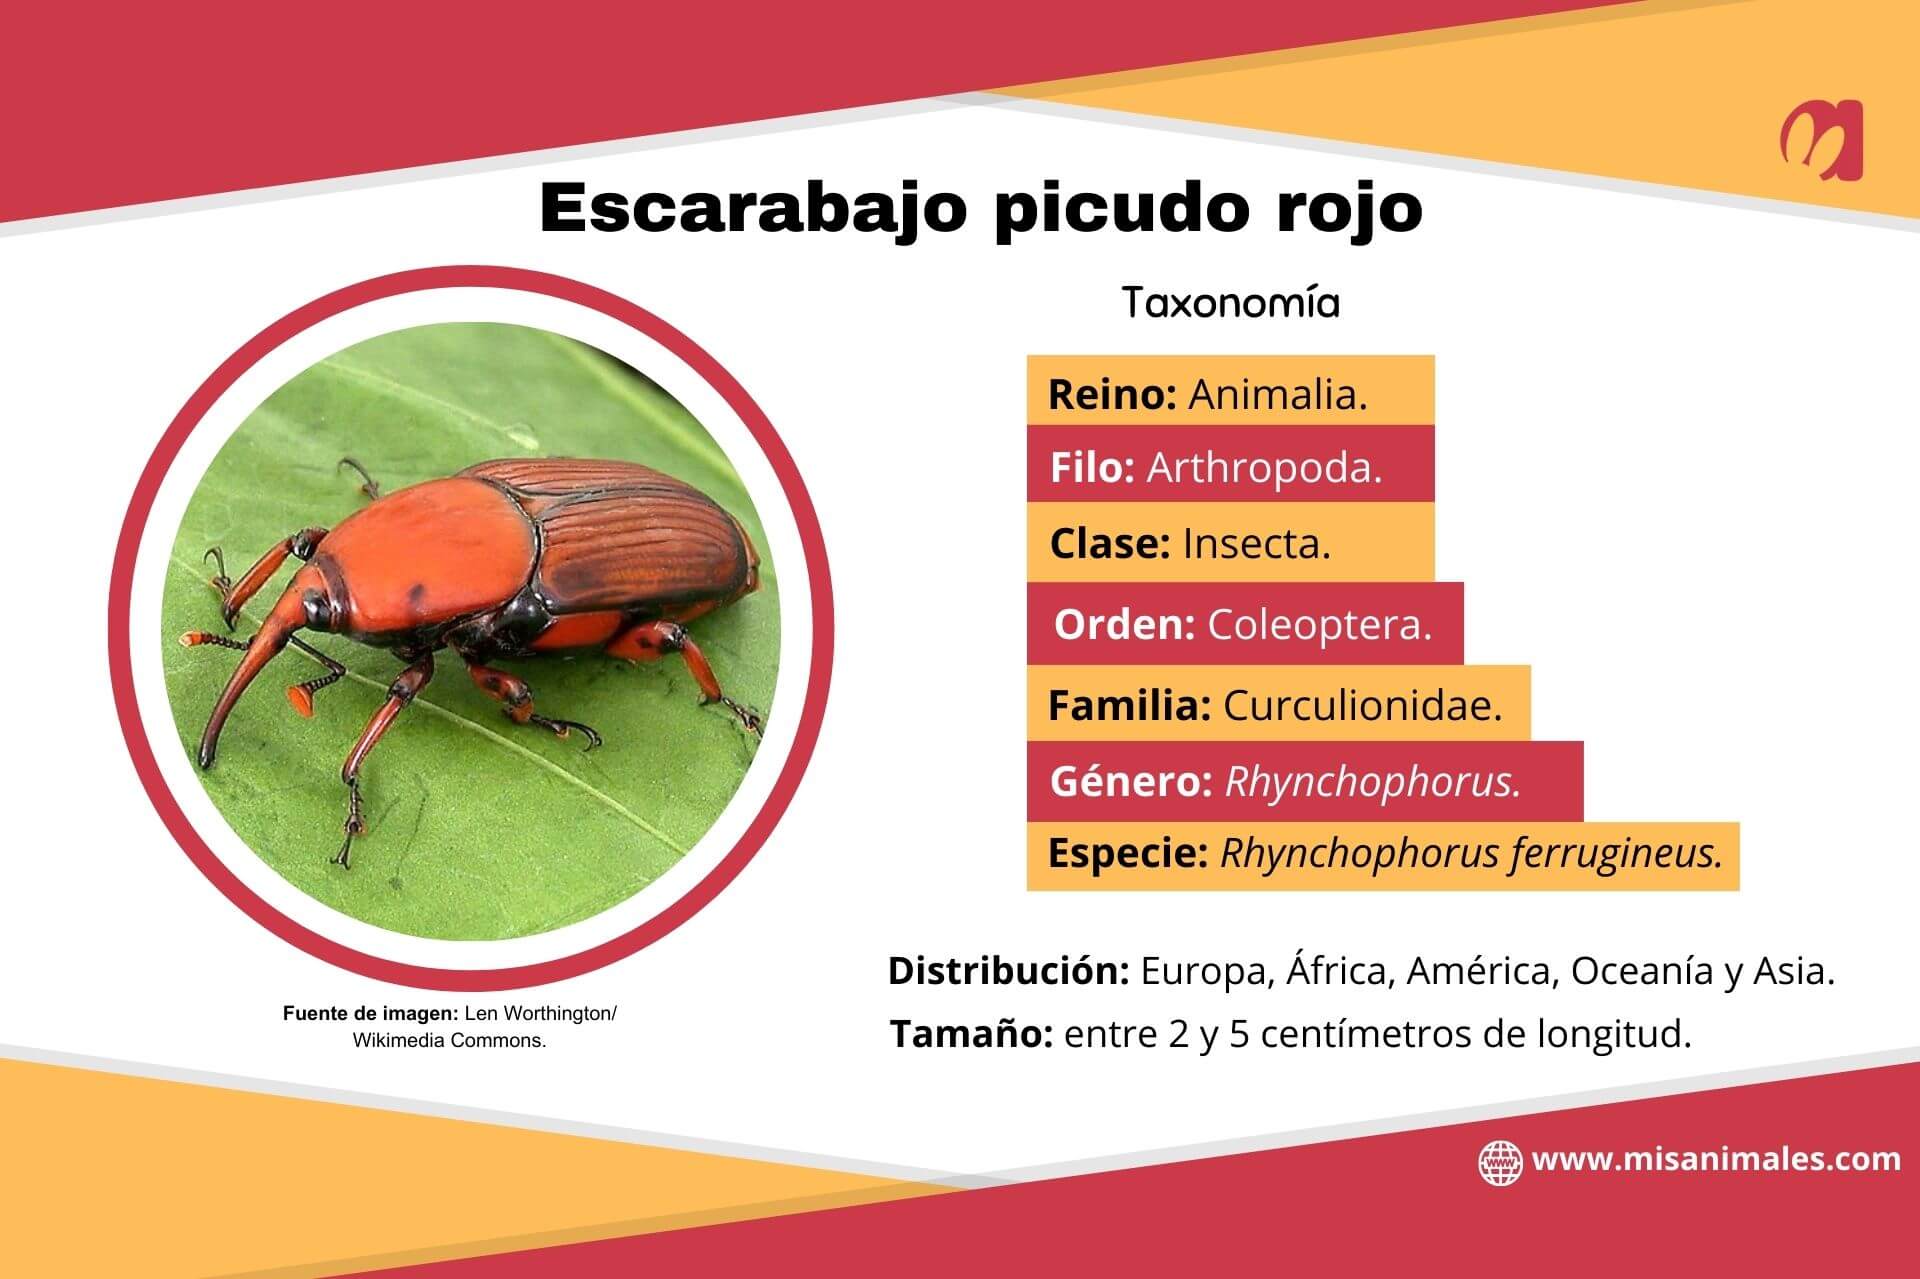 Ficha zoológica, con imagen, sobre la taxonomía, distribución y tamaño del escarabajo picudo rojo (Rhynchophorus ferrugineus). 